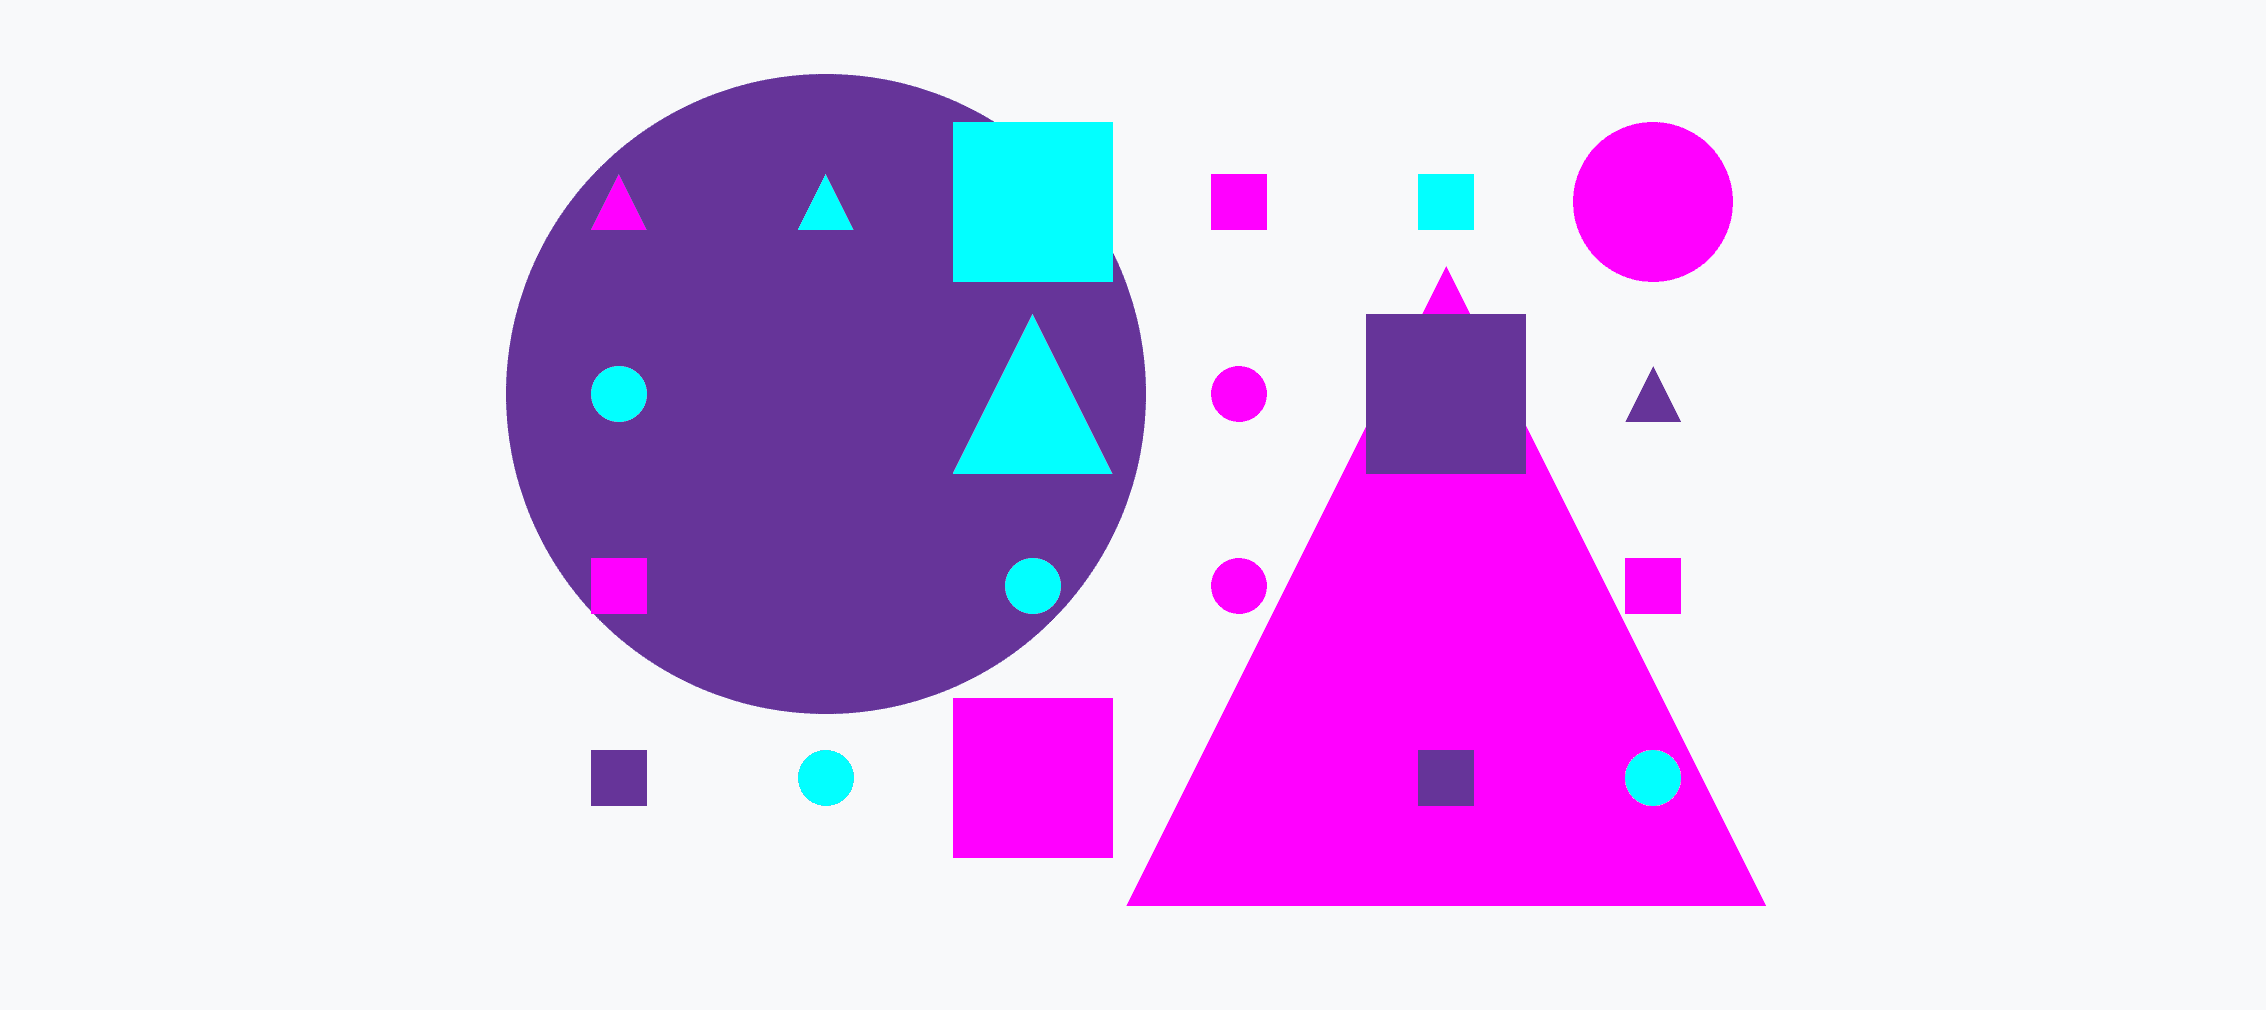 Una cuadrícula colorida de círculos, triángulos y cuadrados pequeños y grandes.